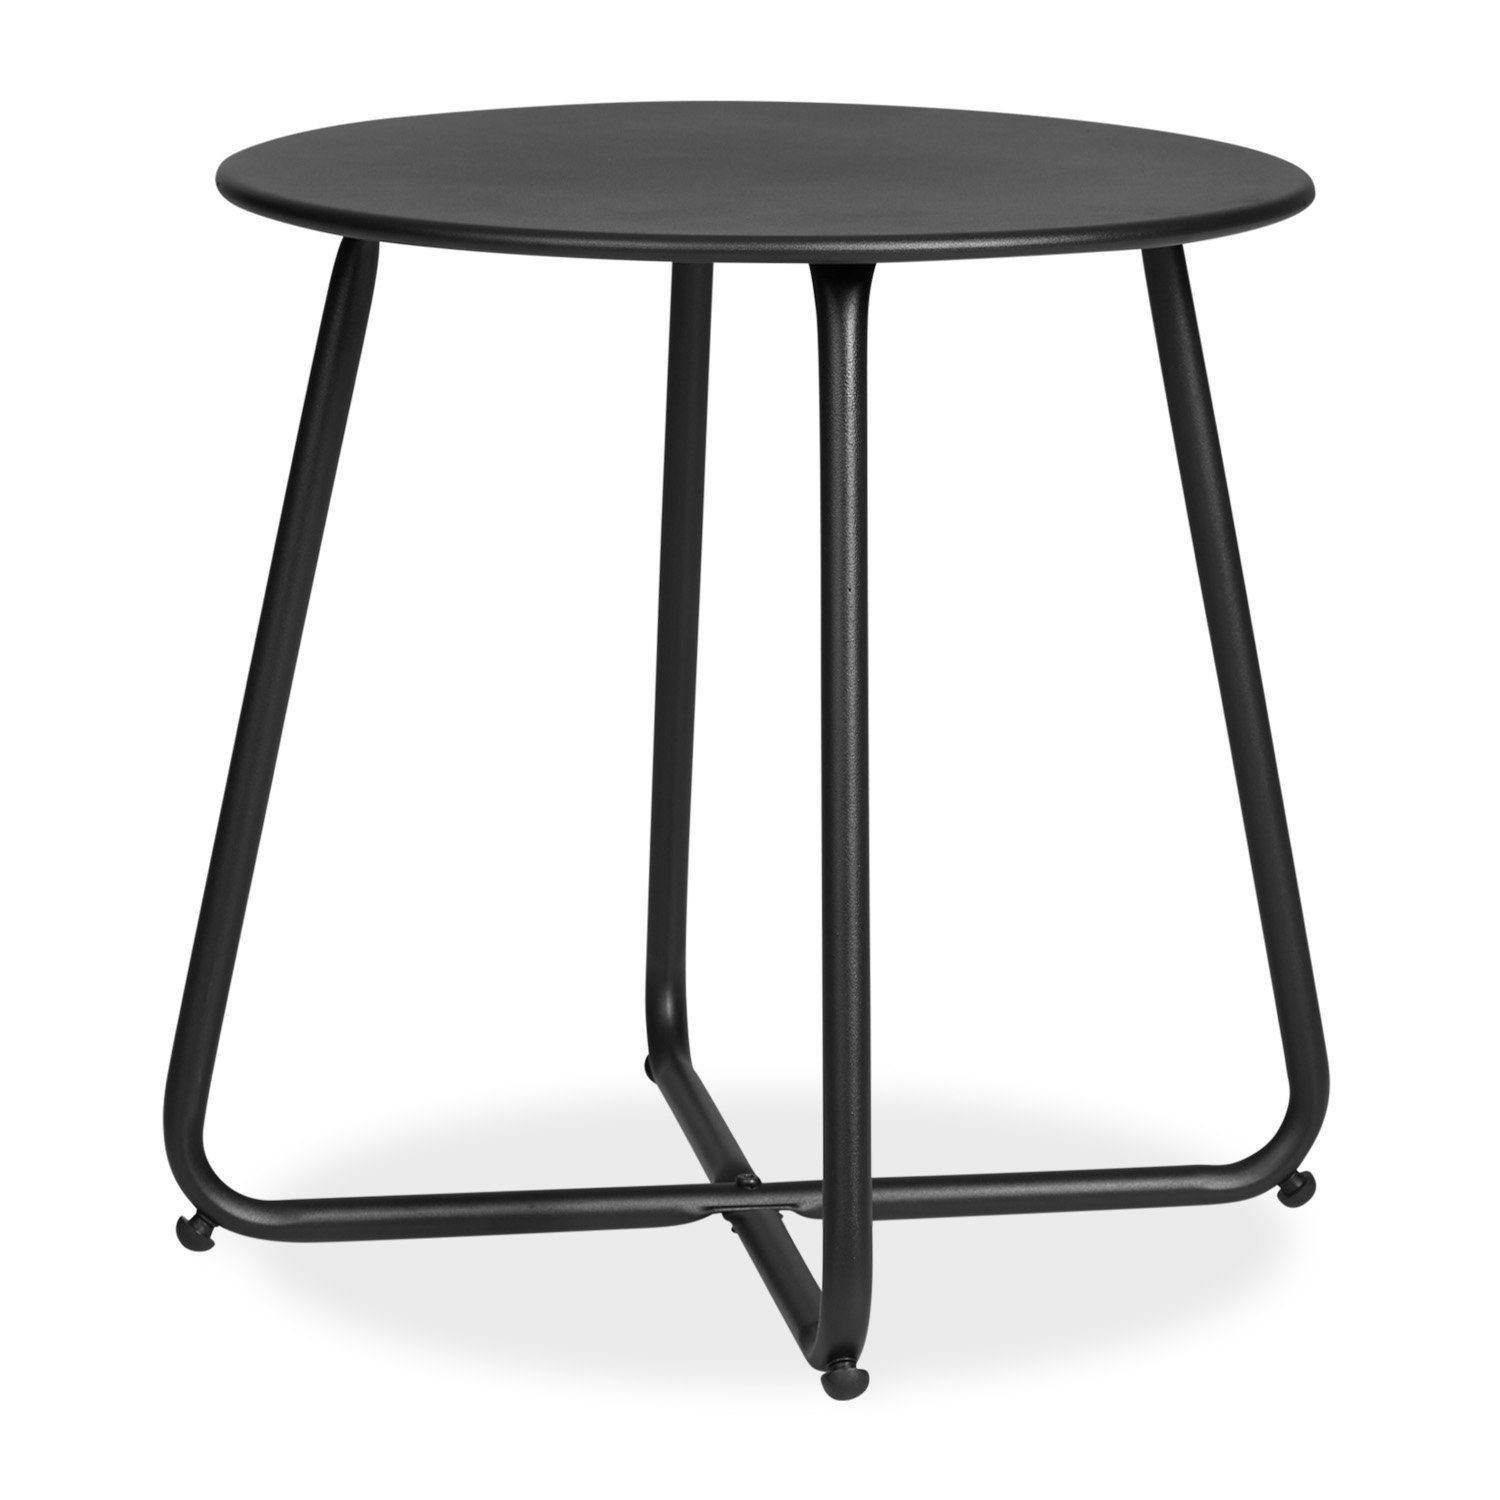 Homestyle4u Beistelltisch Gartentisch Rund Metall Balkontisch Tisch Kaffeetisch 45cm Durchmesser, Schwarz